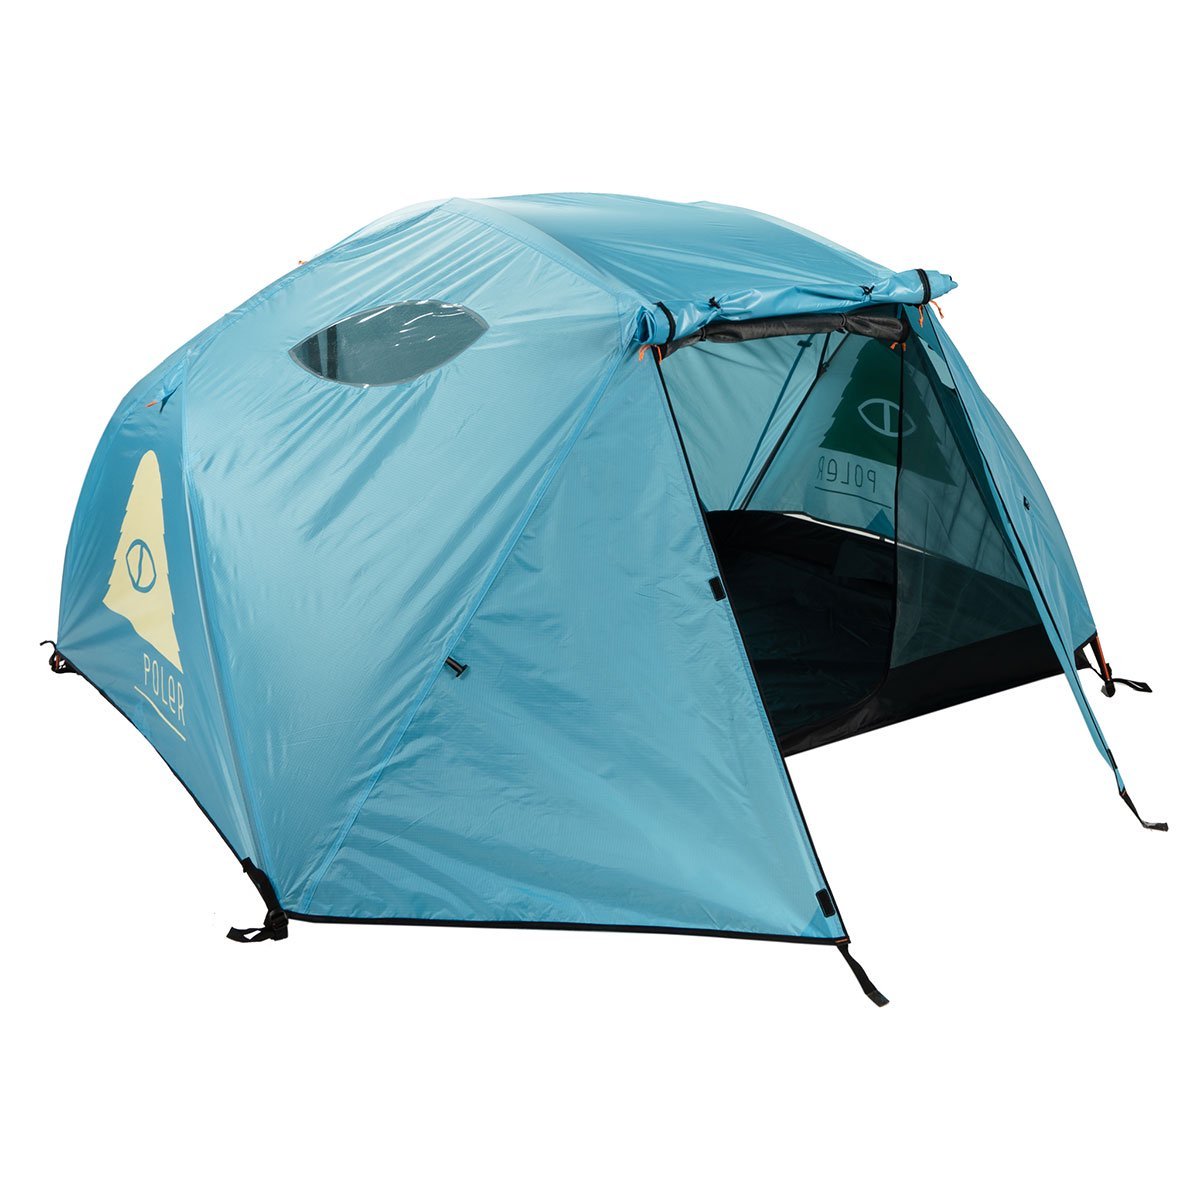 ポーラー テント 正規販売店 POLER アウトドア 二人用テント ドーム型テント 2 MAN PERSON TENT POWDER BLUE  212EQU5201-PDB